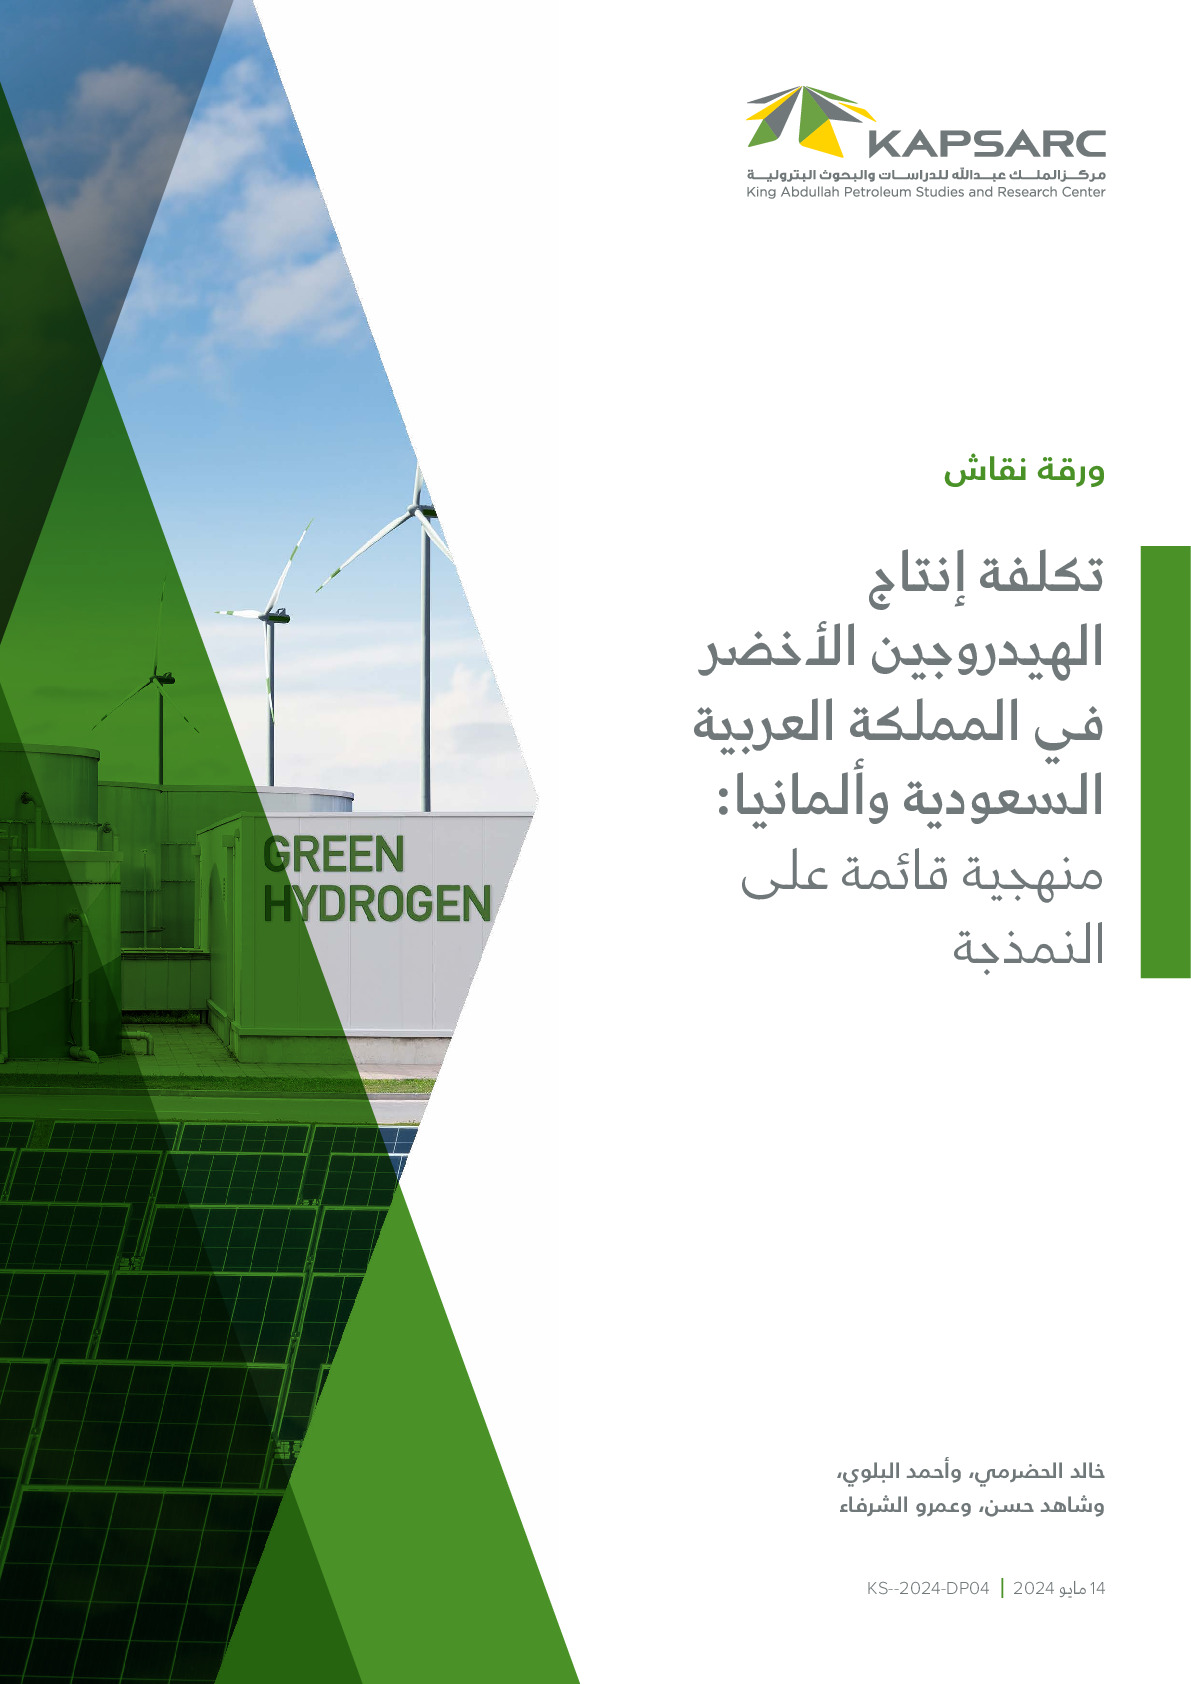 تكلفة إنتاج الهيدروجين الأخضر في المملكة العربية السعودية وألمانيا: منهجية قائمة على النمذجة